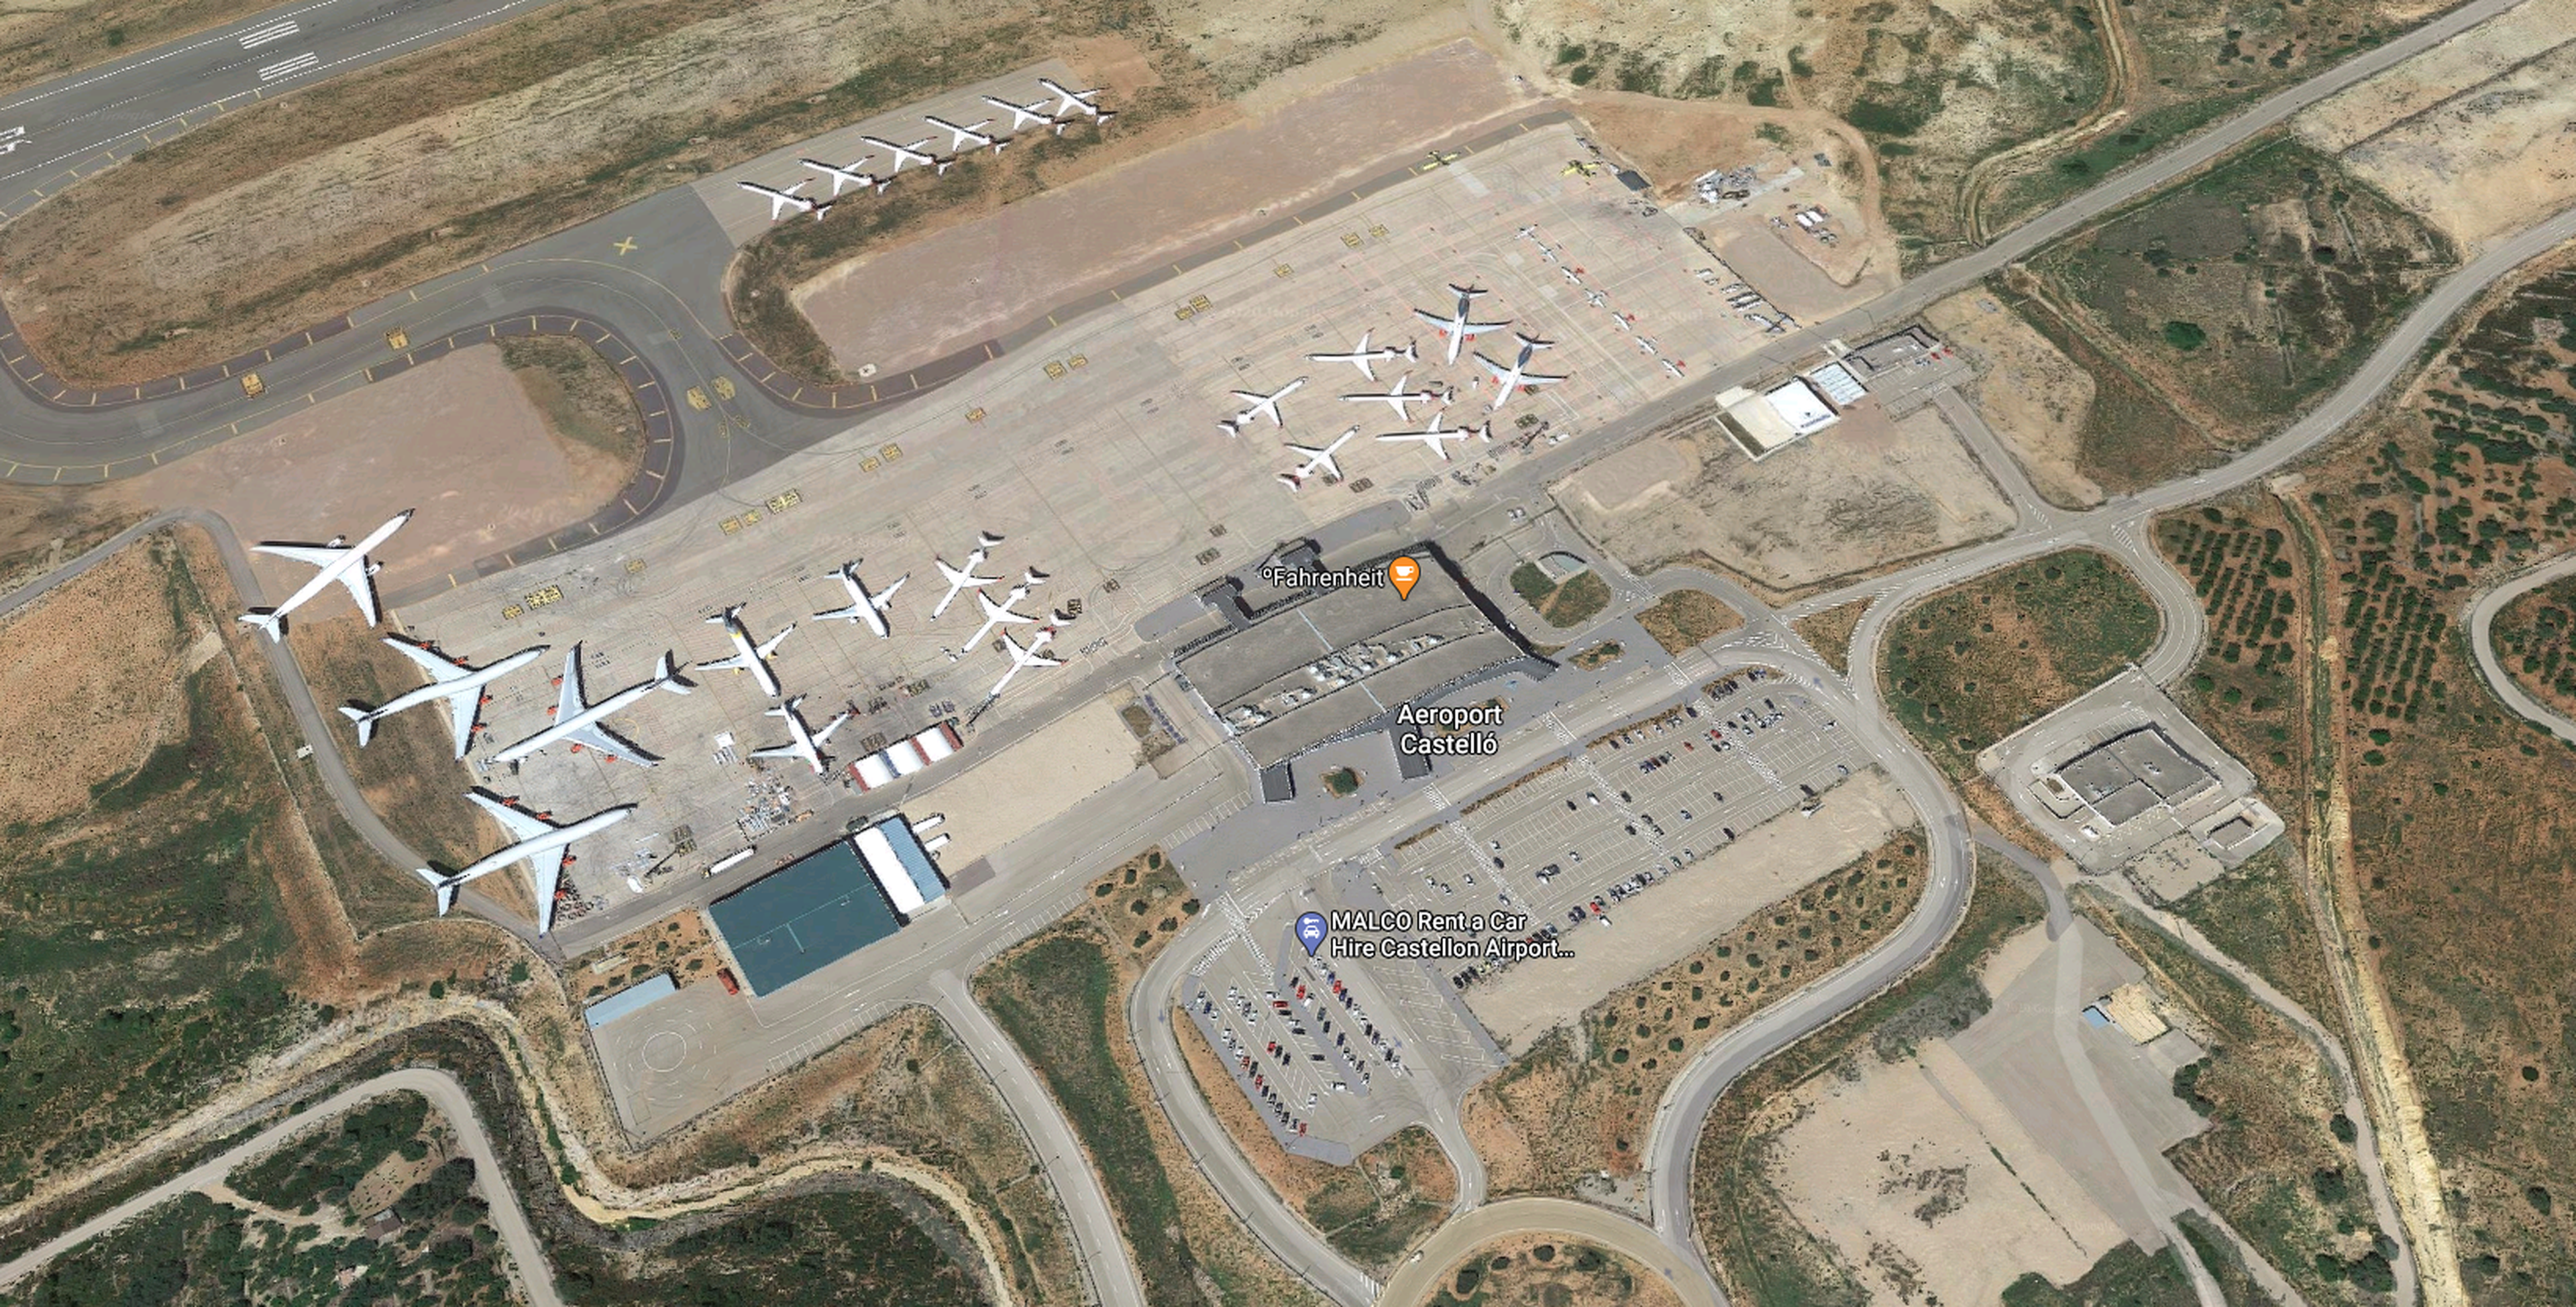 Vista aérea del Aeropuerto de Castellón en Google Maps.